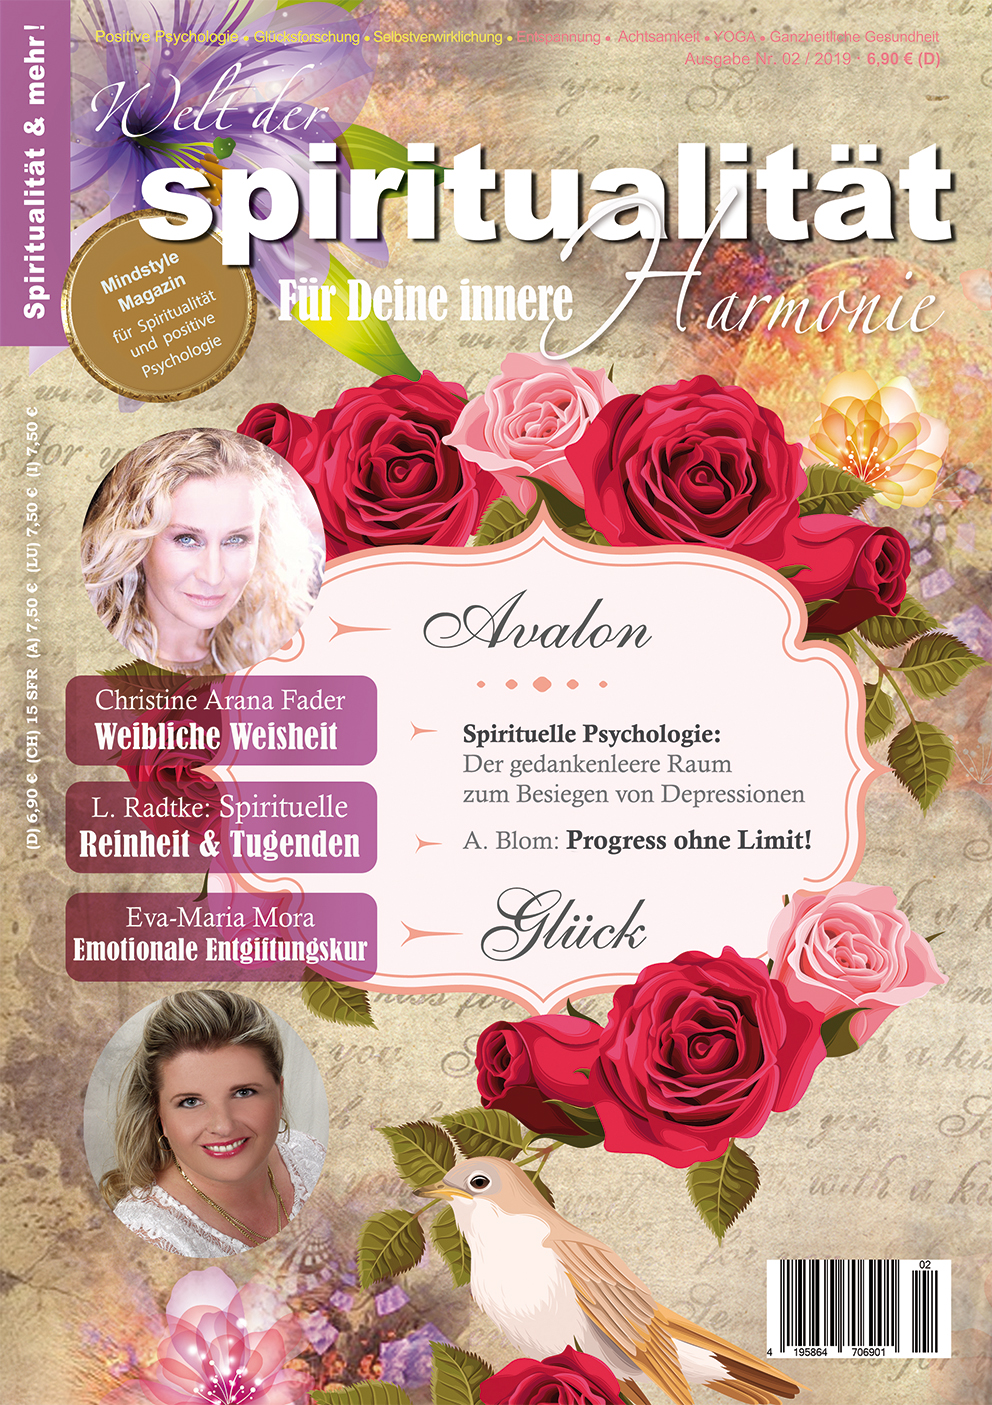 Welt der Spiritualitaet_Abonnement_Blom Verlag